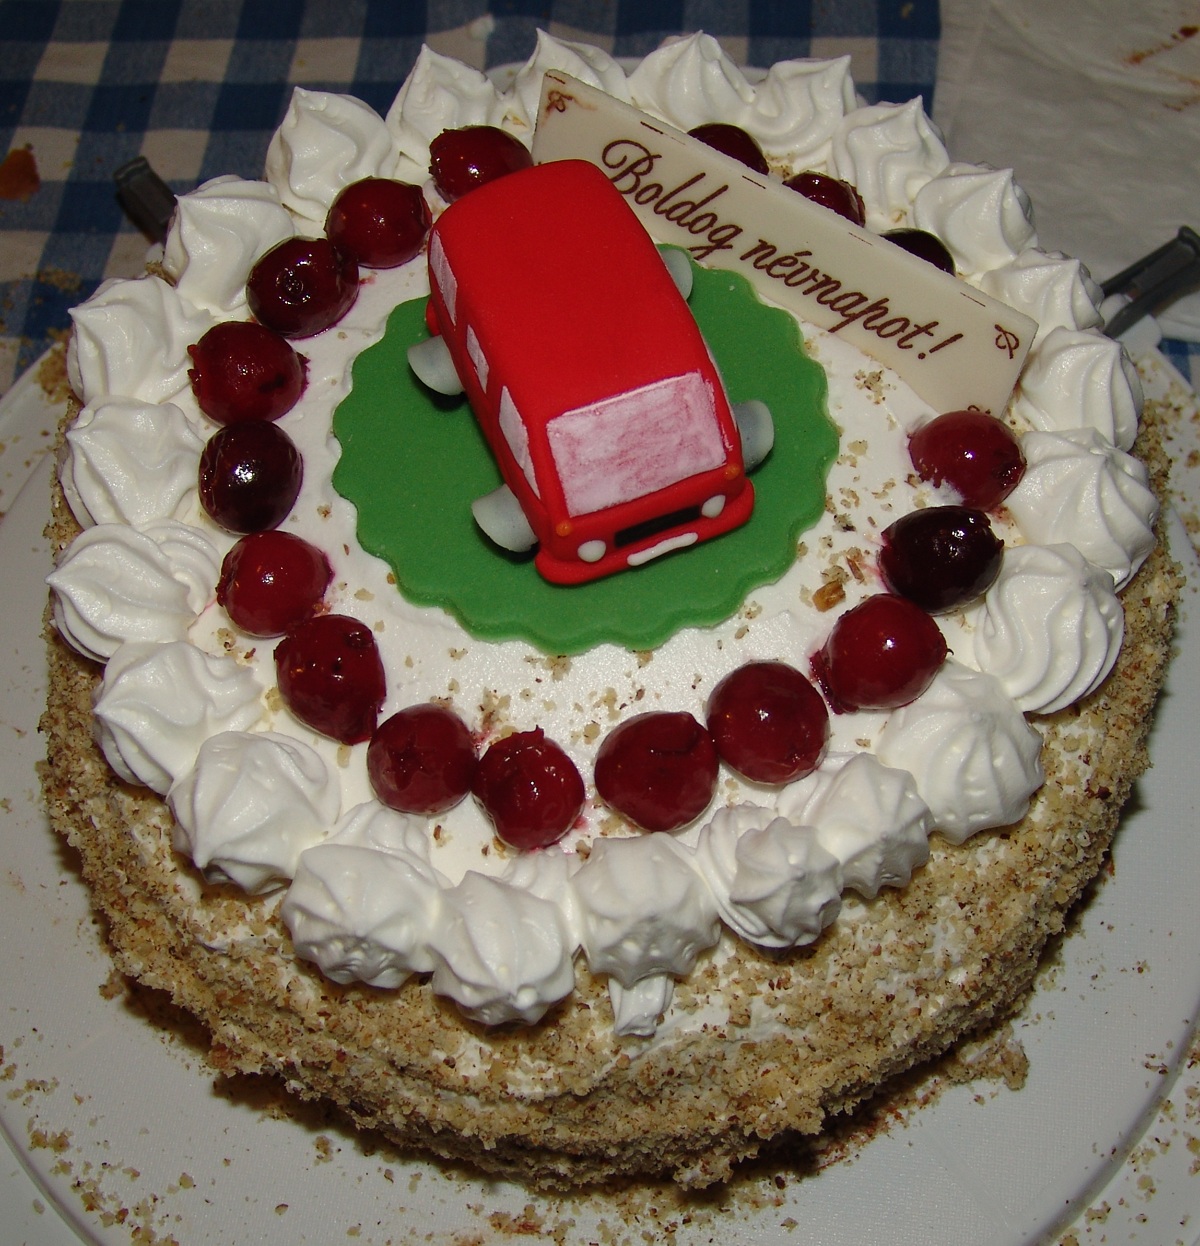 Kyu kislnynak nvnapi tortja (2005)